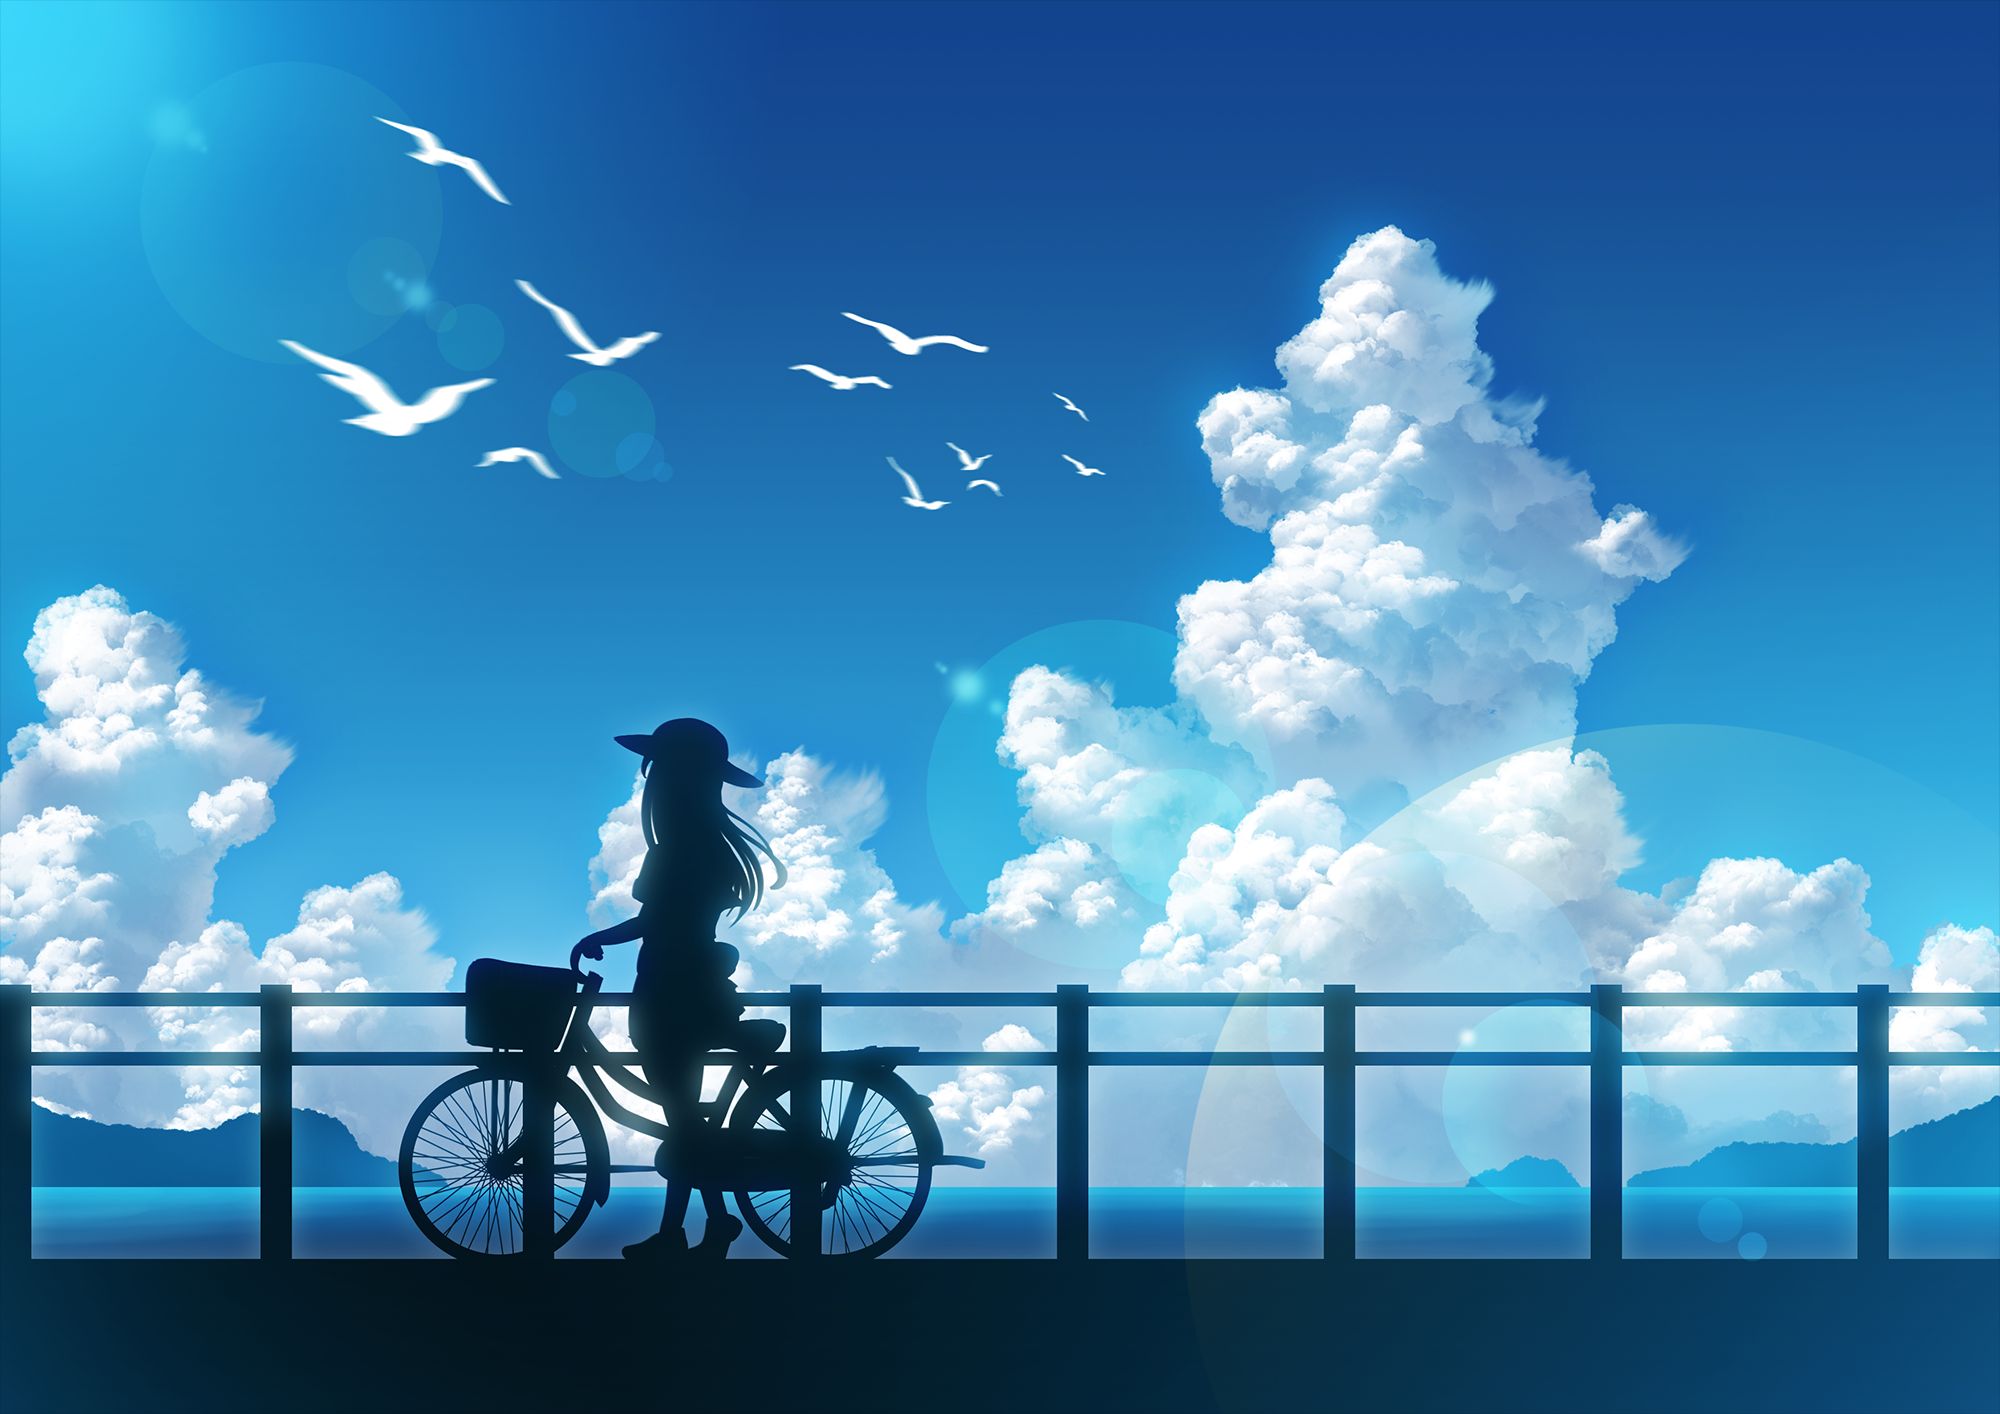 Скачать обои бесплатно Аниме, Небо, Облака, Лето, Велосипед, Оригинал картинка на рабочий стол ПК